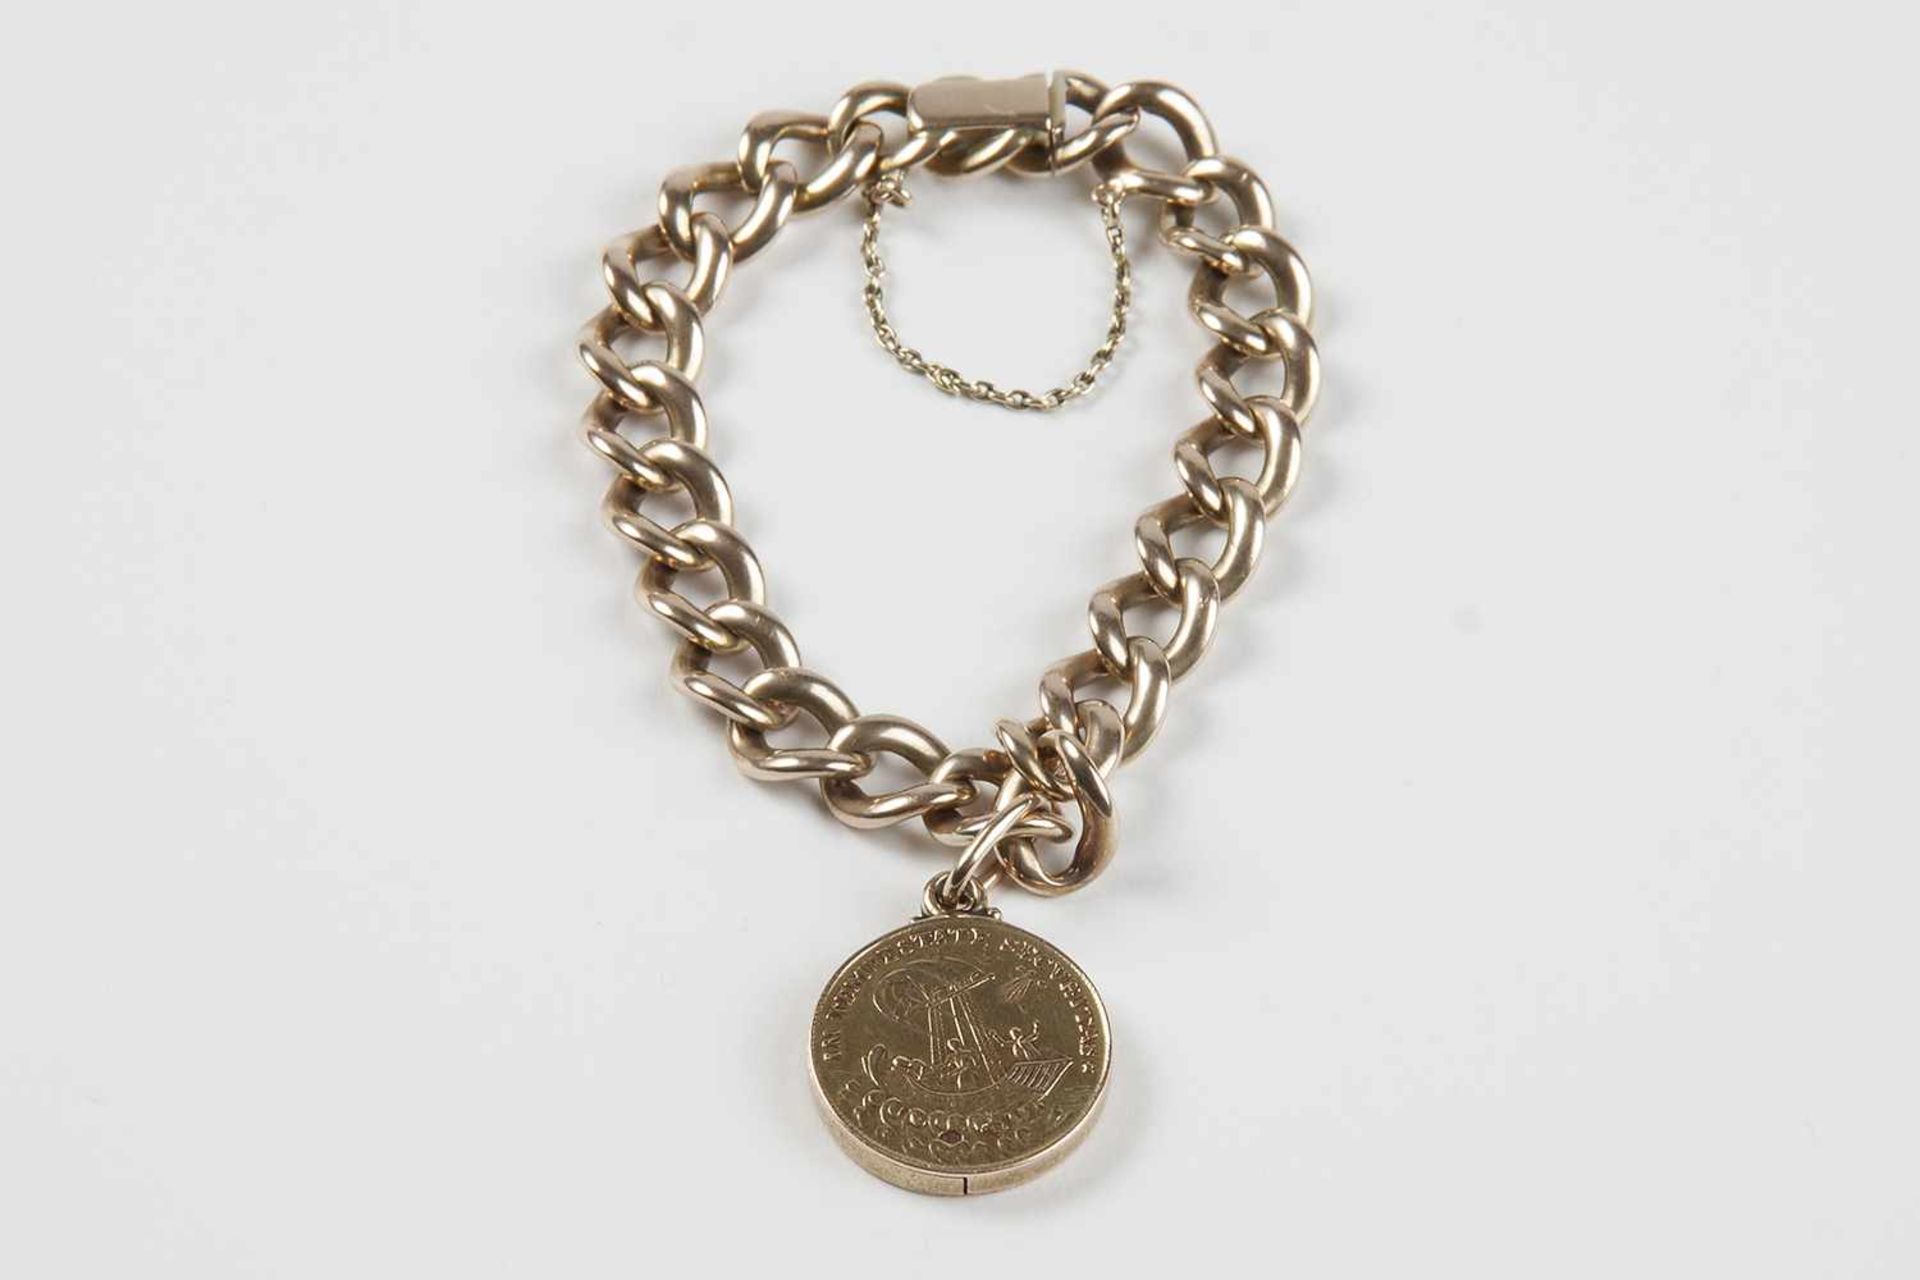 Armkette mit 1 MedaillonGold 585, mit einem seitlich aufklappbaren Georgsmedaillon, Steckschließe